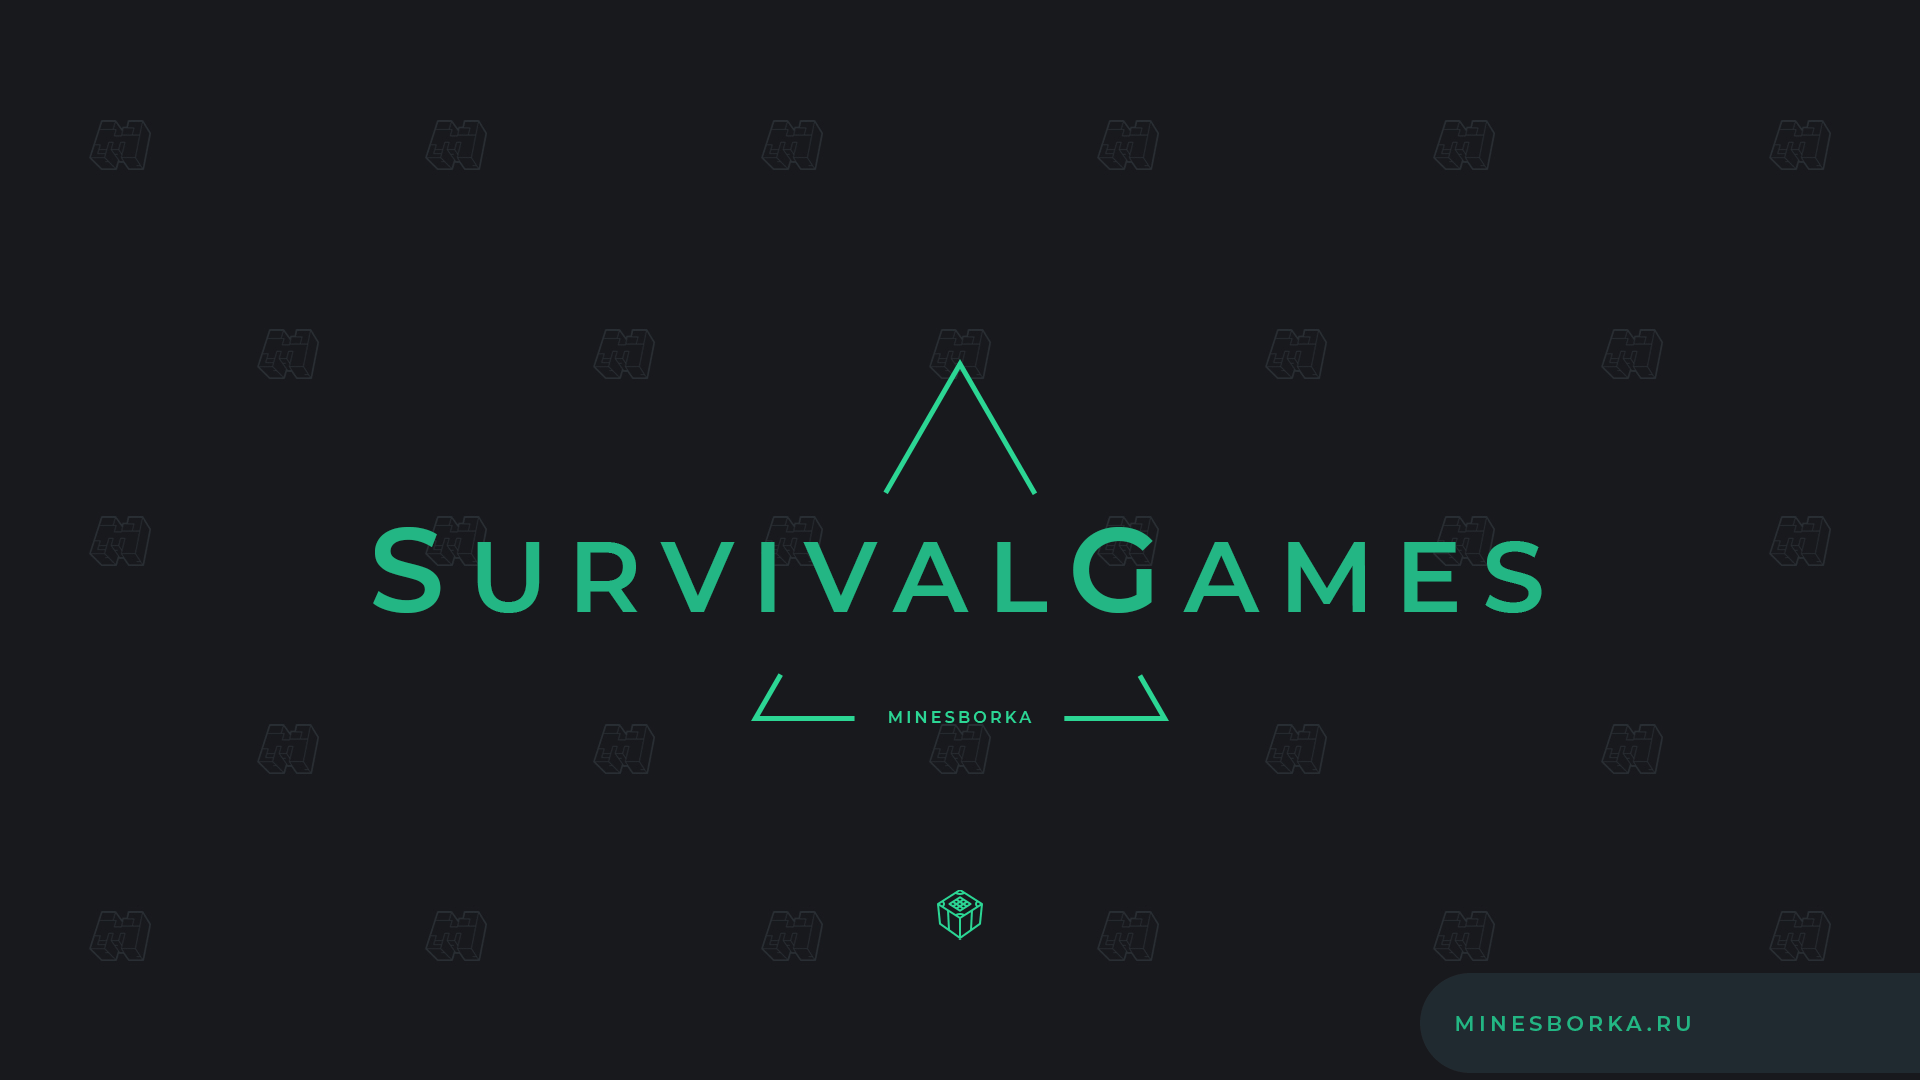 Скачать плагина Survival Games | Мини-Игра "Голодные игры" | Выживет сильнейший!